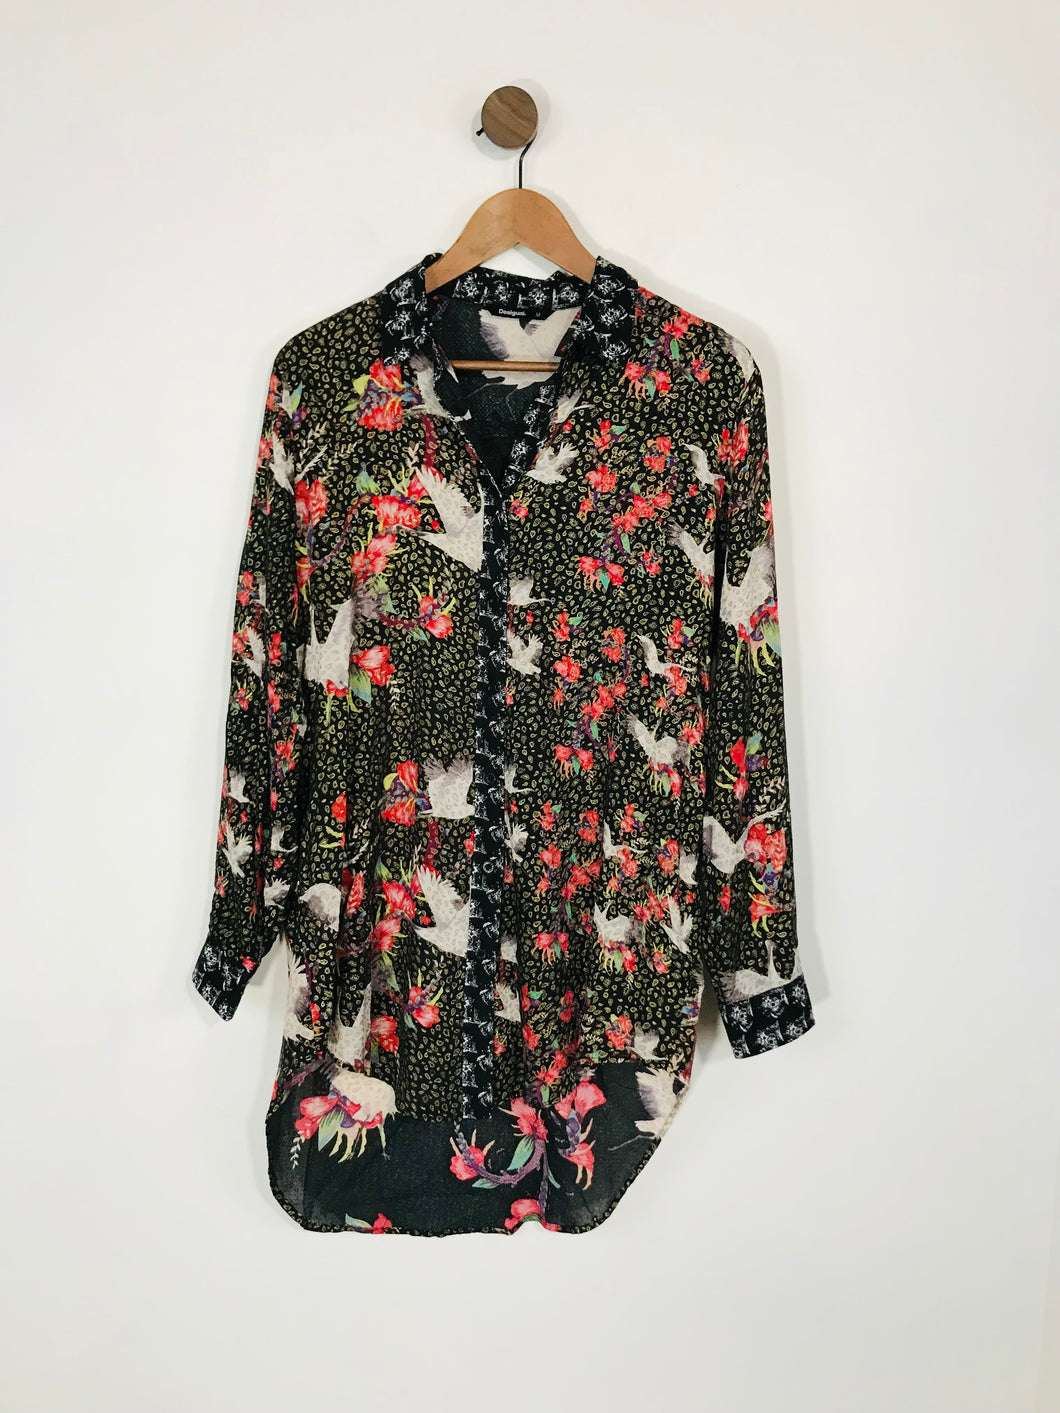 Desigual Women's Floral Loose Fit Button-Up Shirt | M UK10-12 | Multicolour